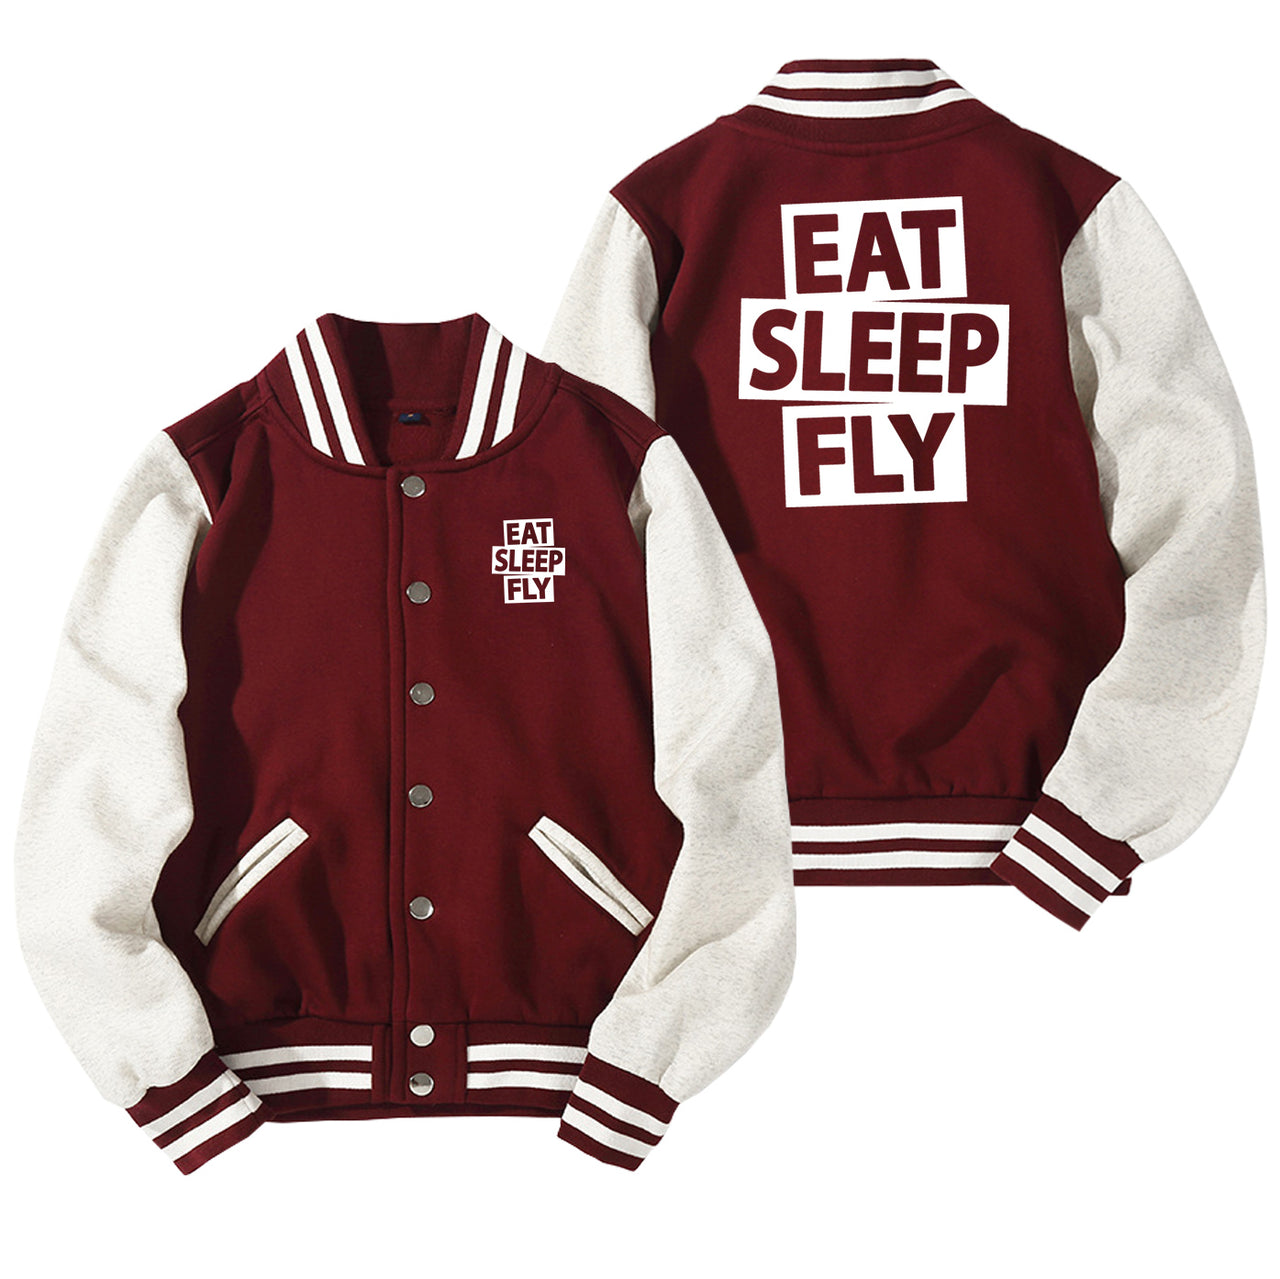 Eat Sleep Fly Designed Baseball Style Jackets